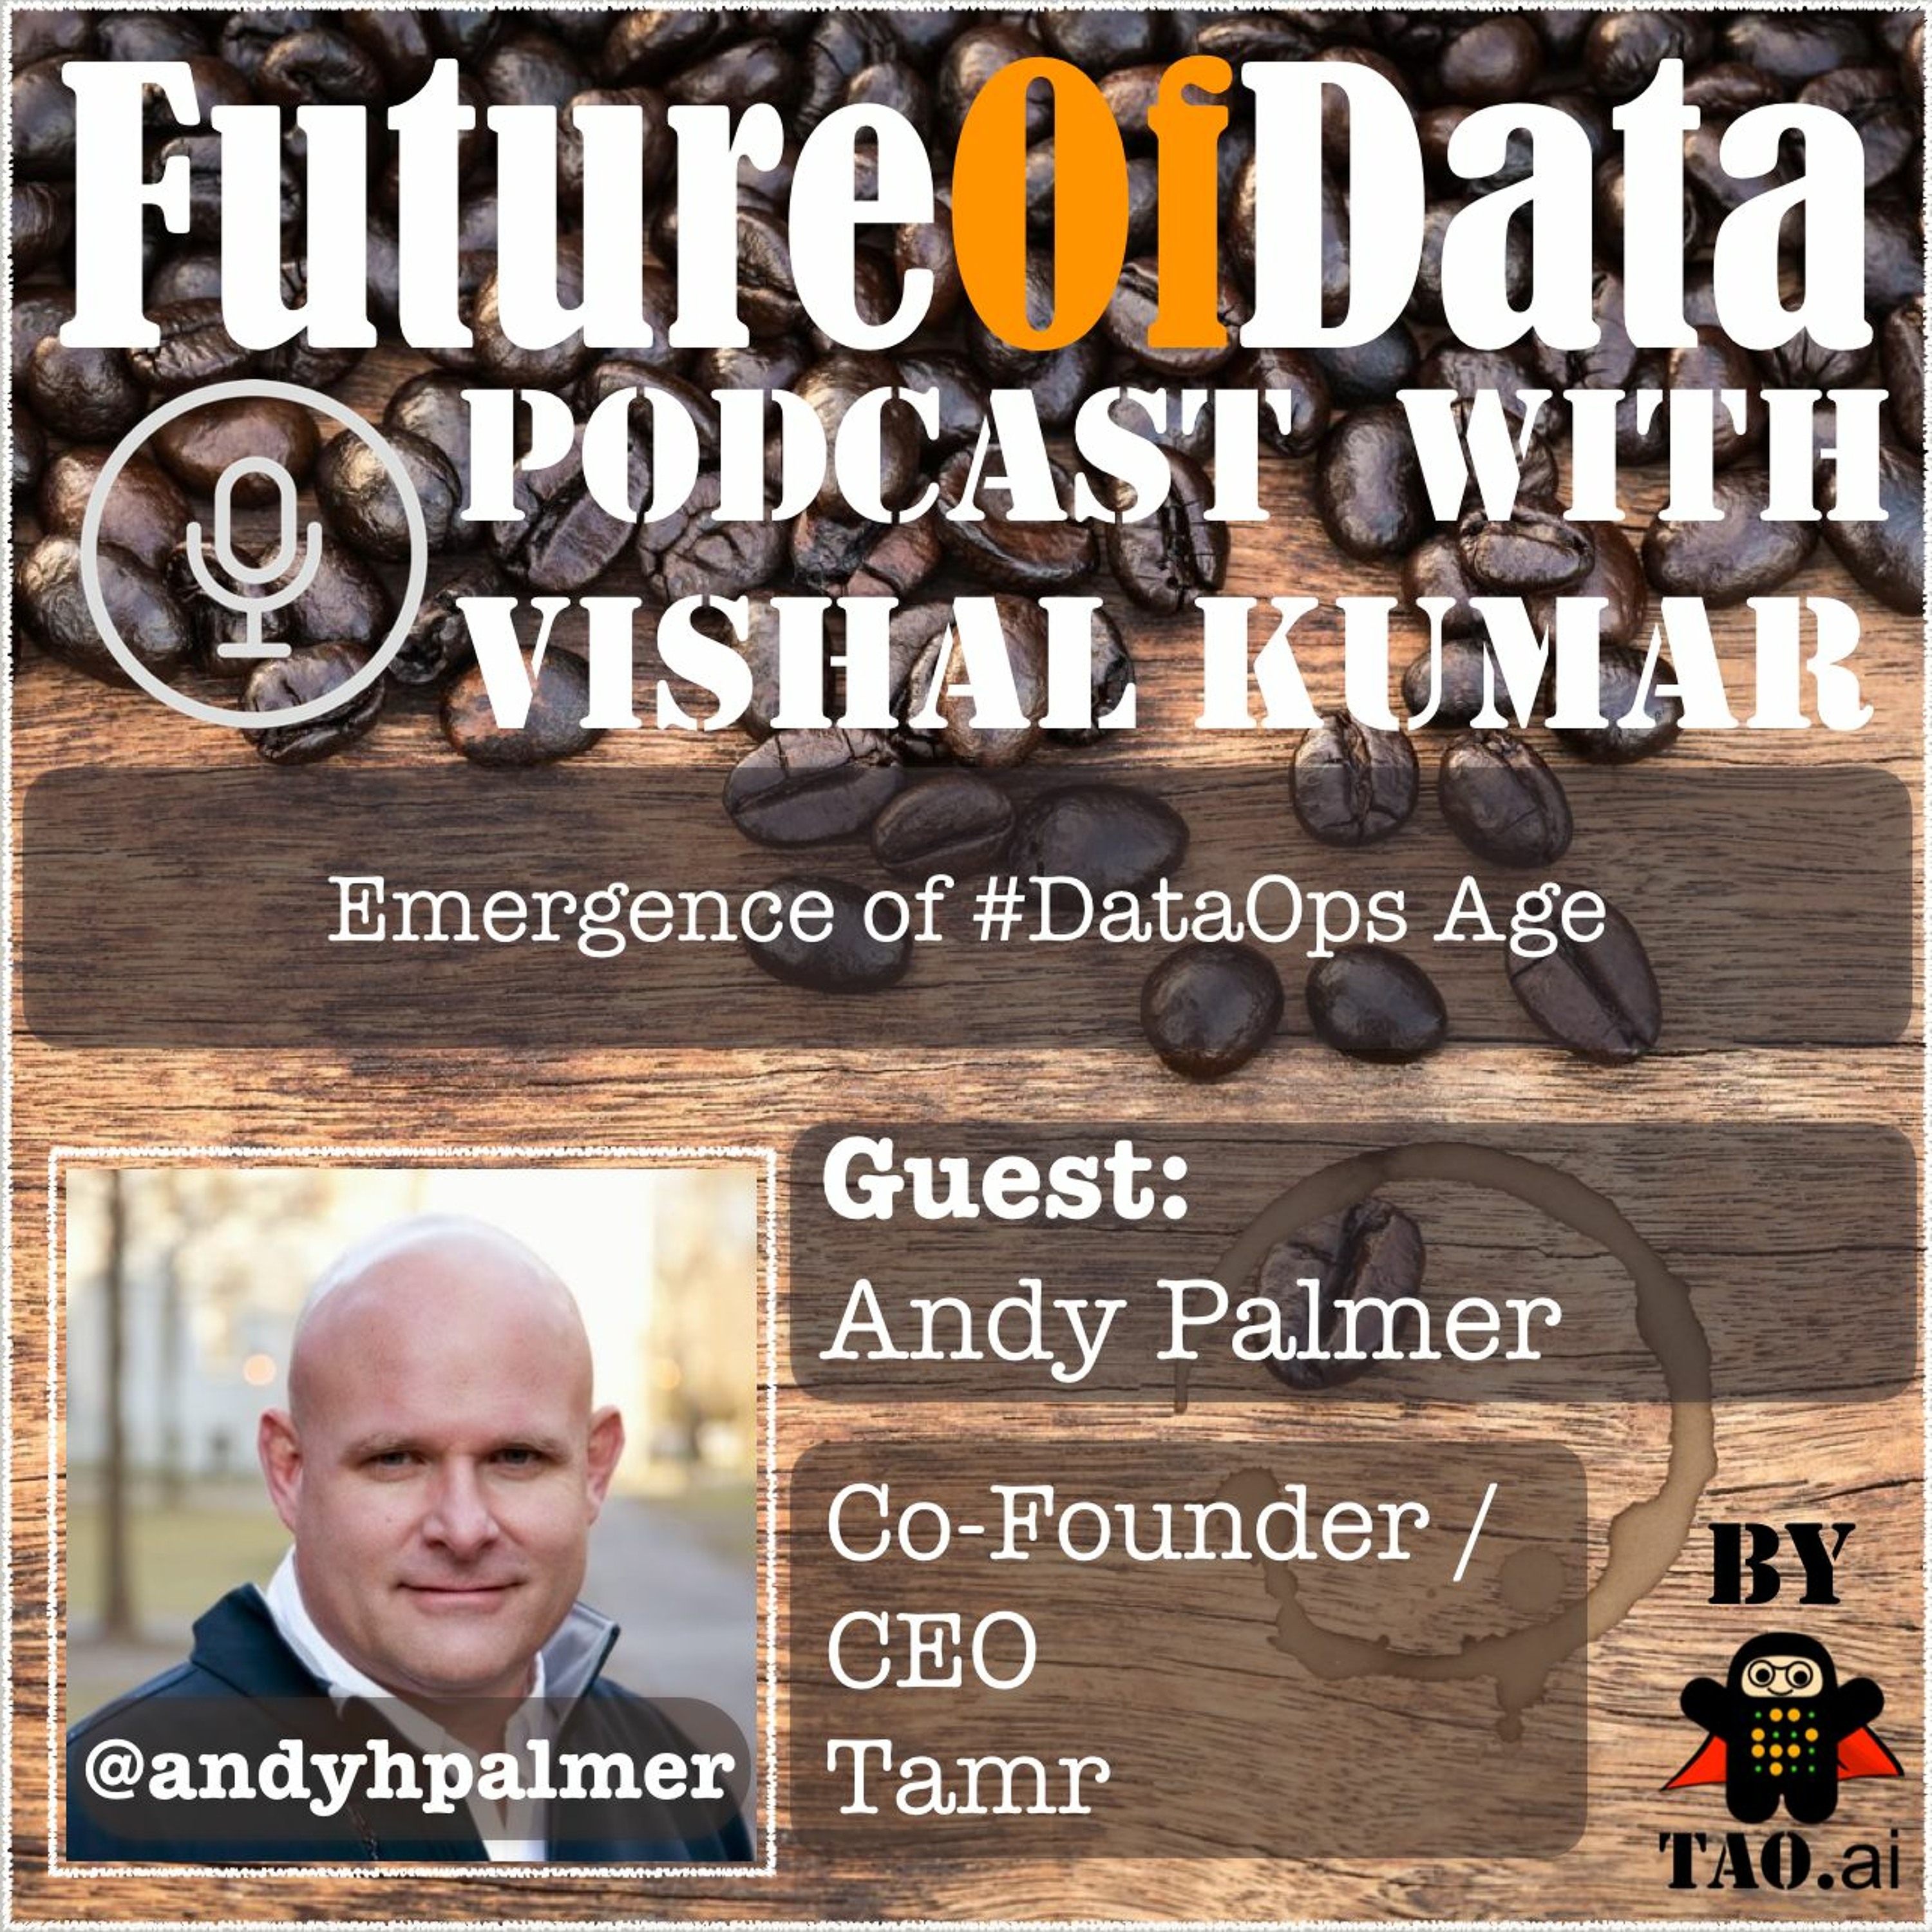 Emergence of #DataOps Age - @AndyHPalmer #FutureOfData